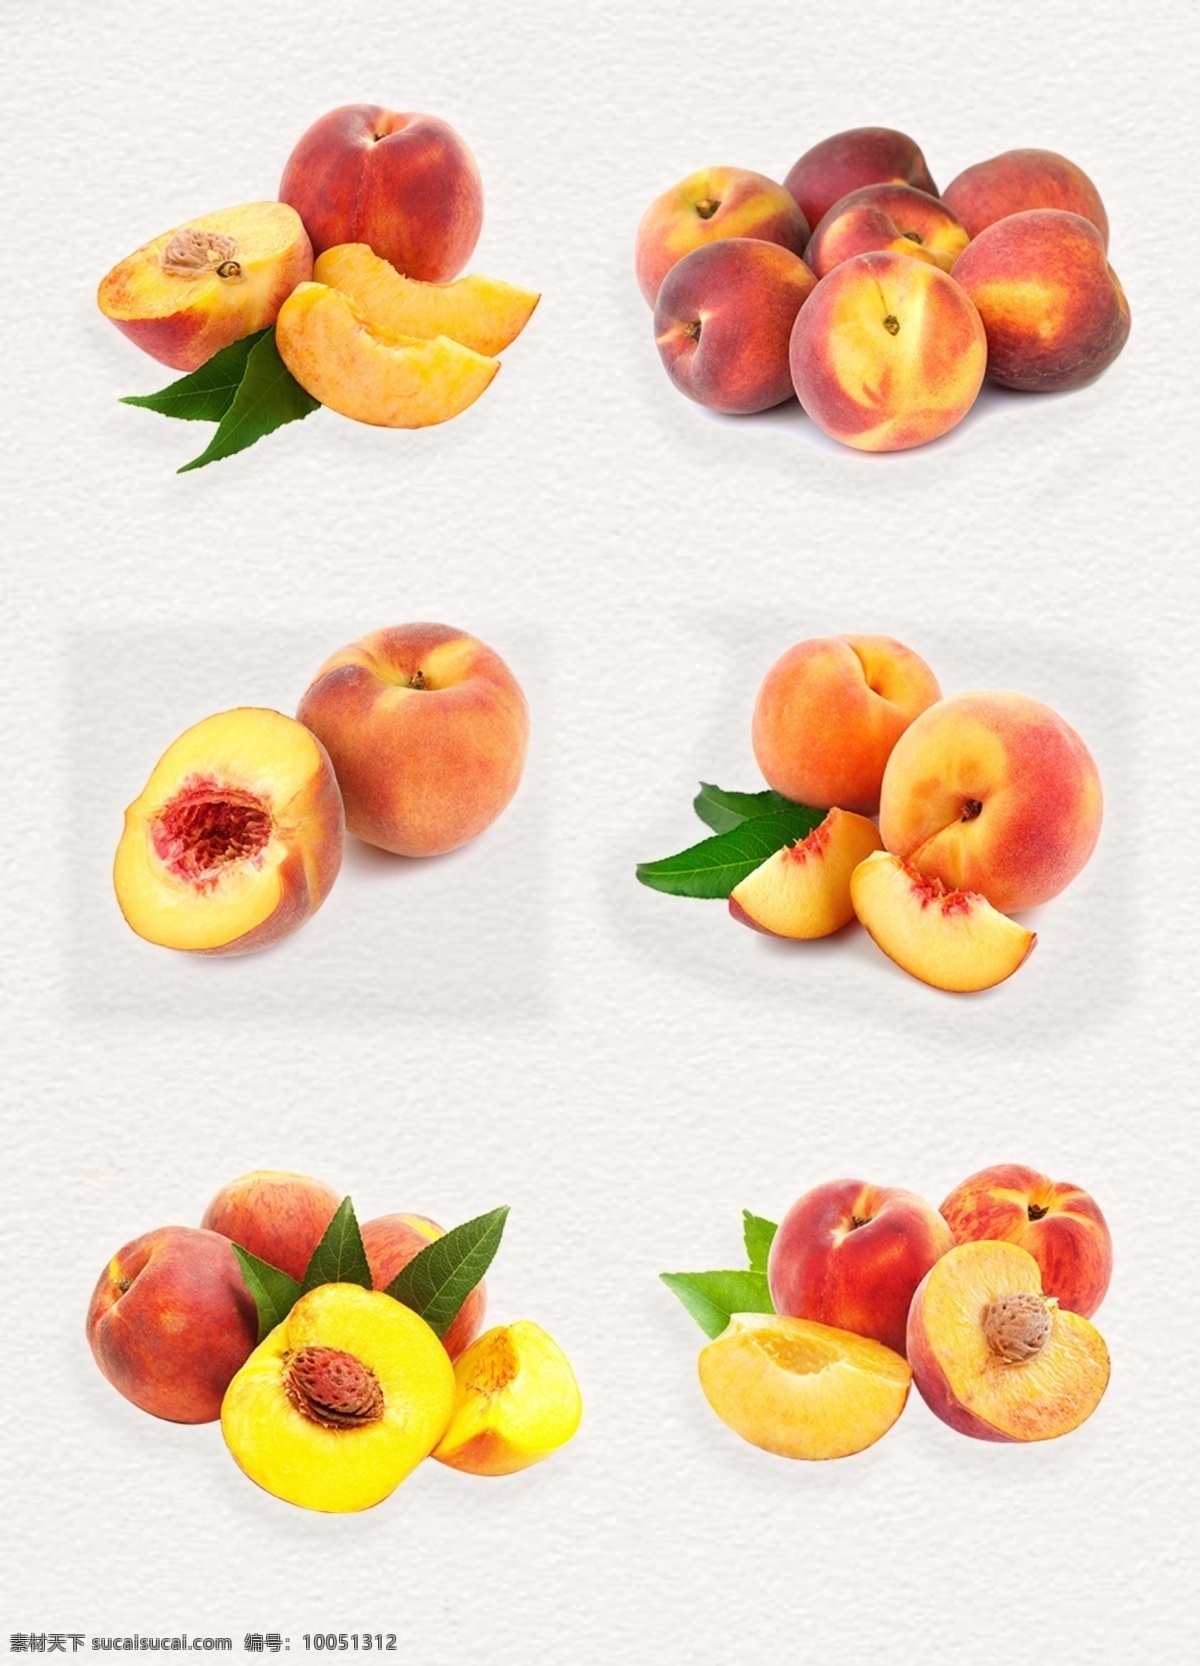 美味 新鲜 水果 油桃 静物 拍摄 桃子 黄桃 高清图片 产品实物 带叶子的桃子